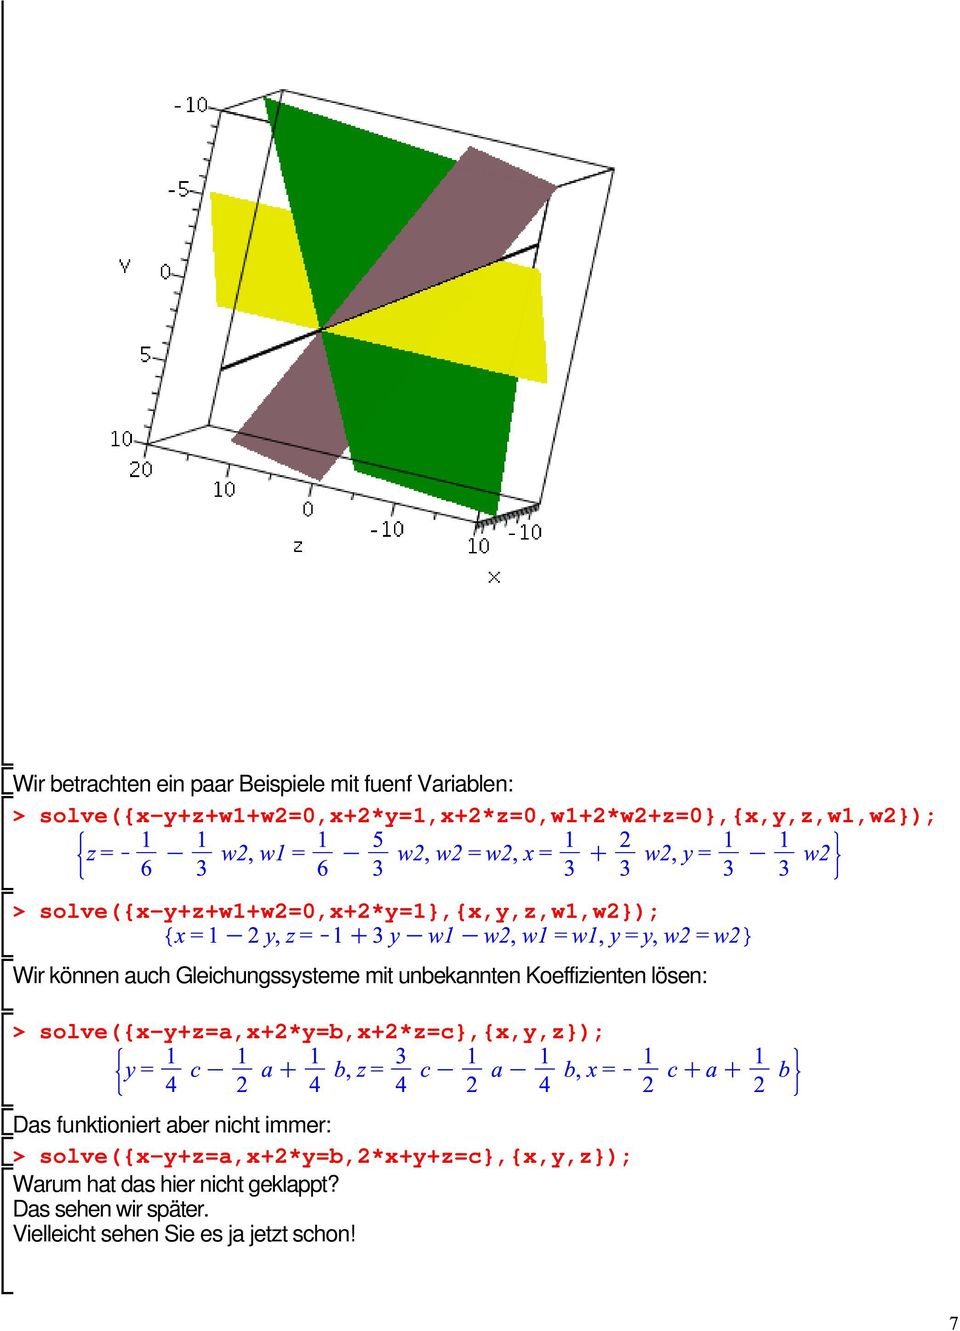 Wir können auch Gleichungssysteme mit unbekannten Koeffizienten lösen: solve({x-y+z=a,x+2*y=b,x+2*z=c},{x,y,z});